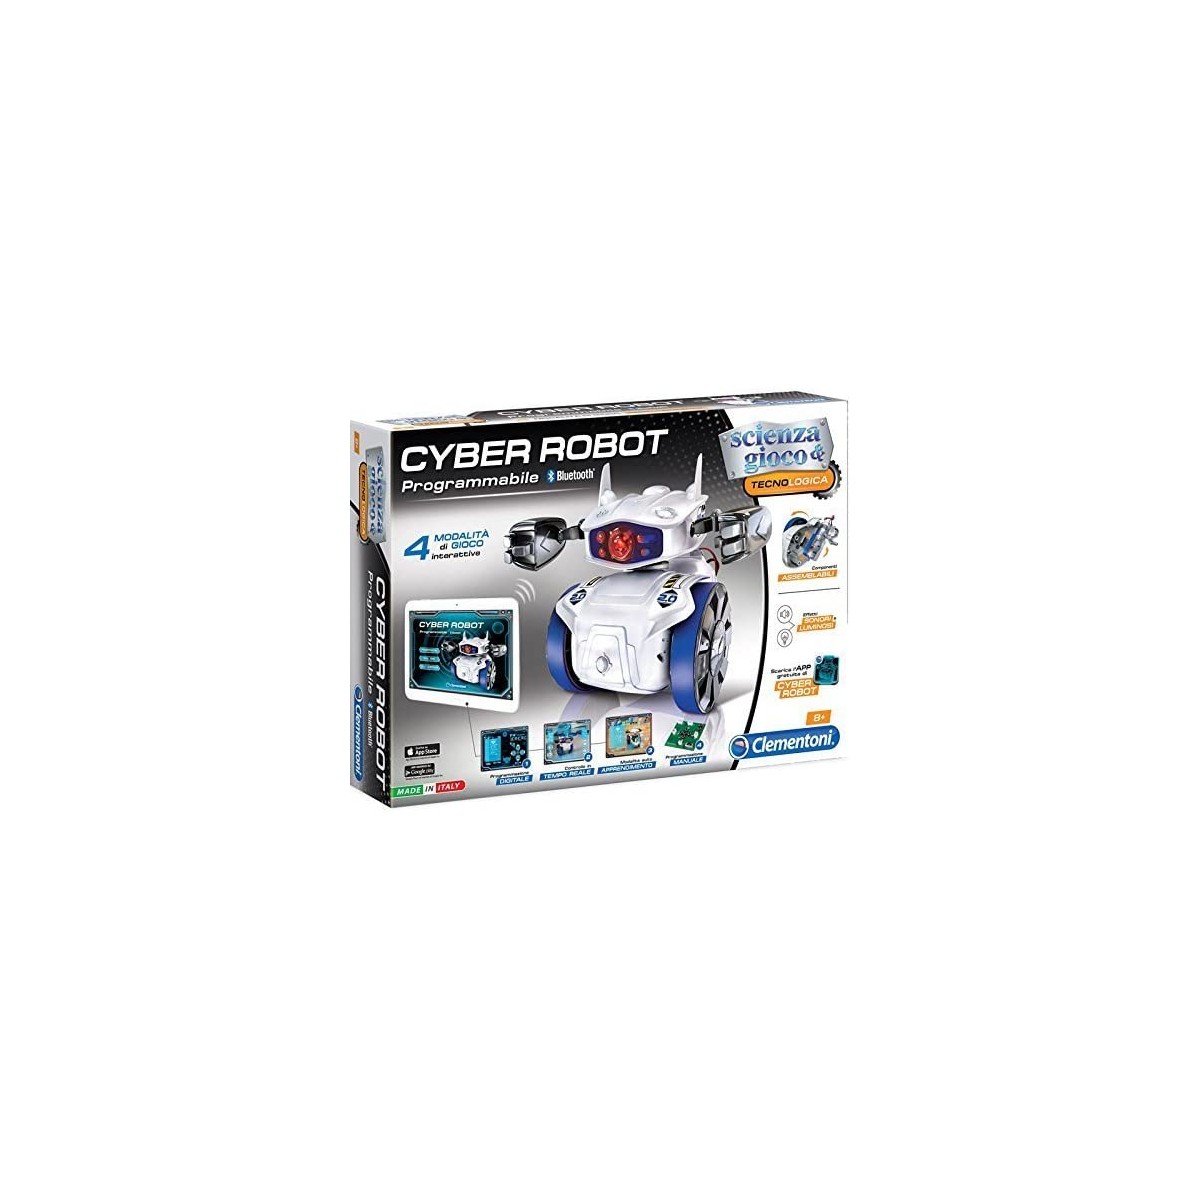 Cyber Robot didattico - Clementoni, giocattolo educativo